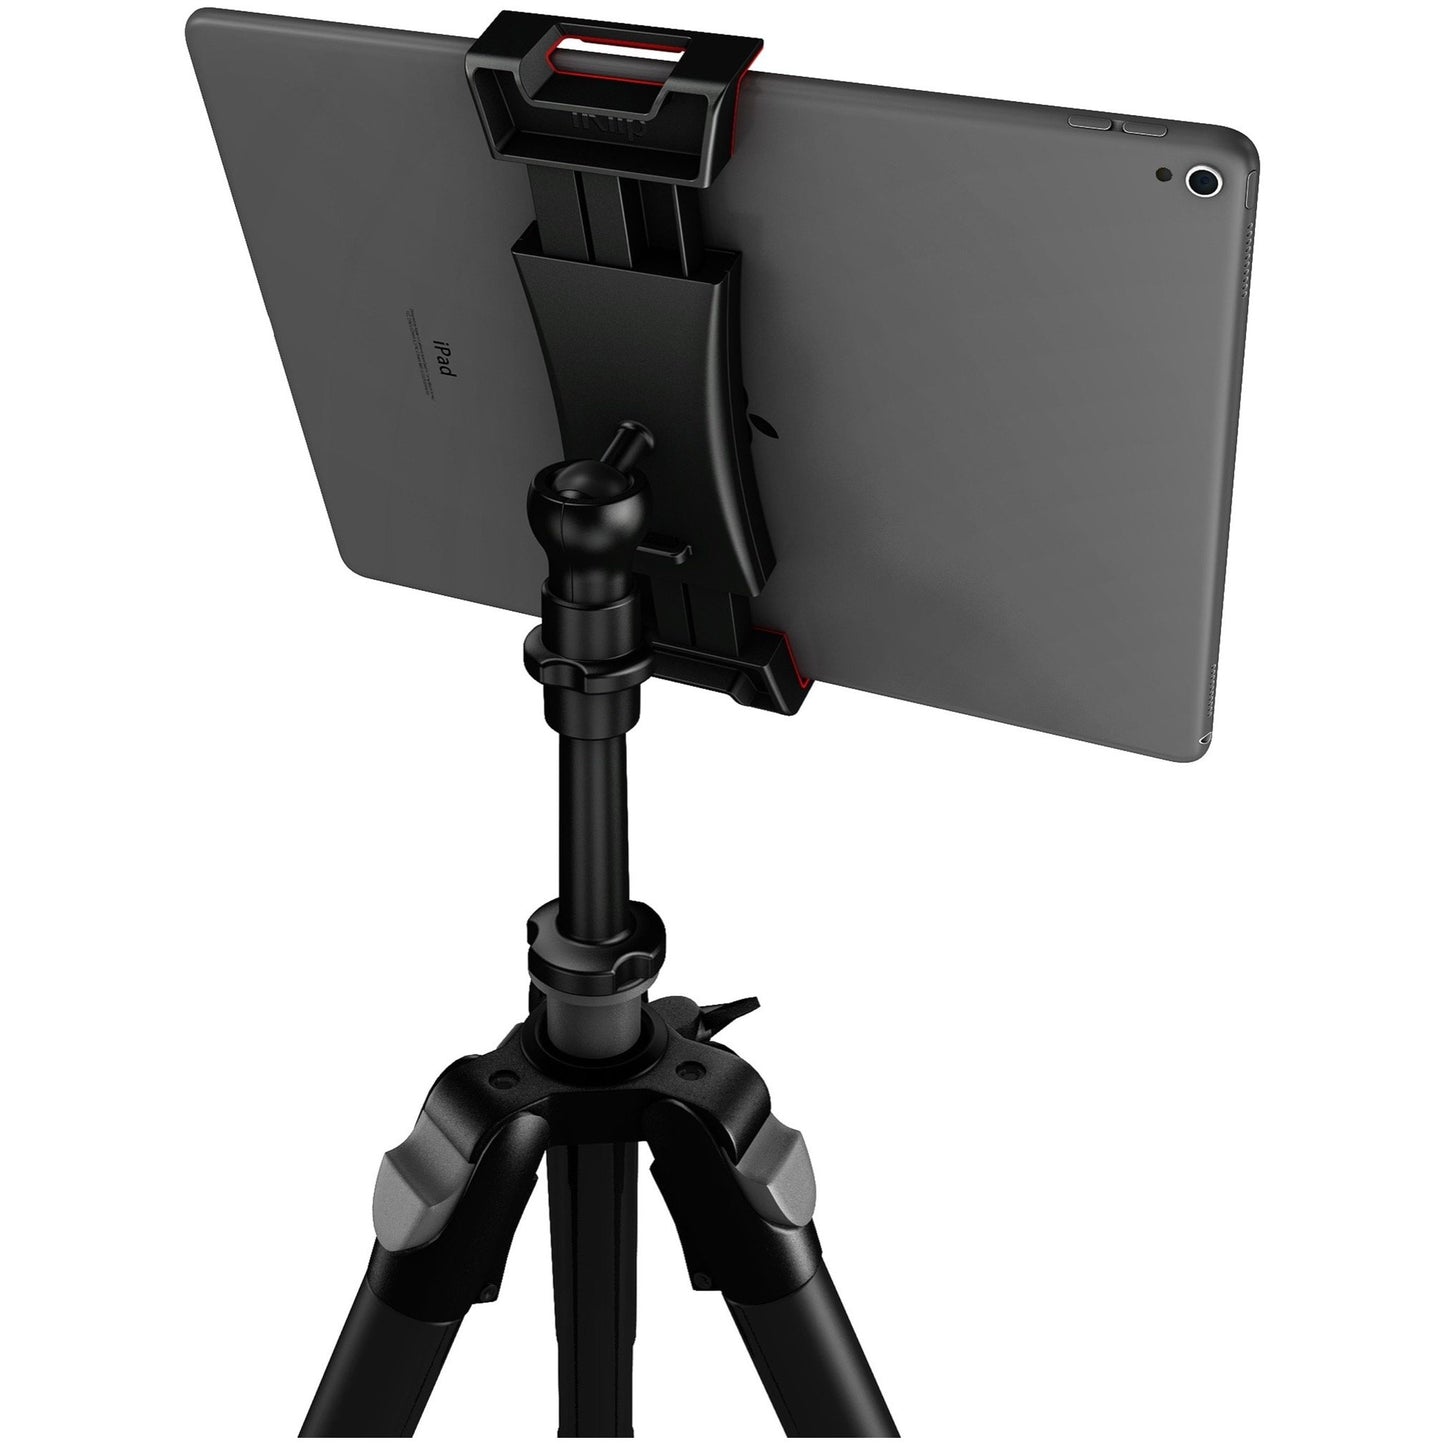 IK Multimedia iKlip 3 Video Tripod Mount for Tablets